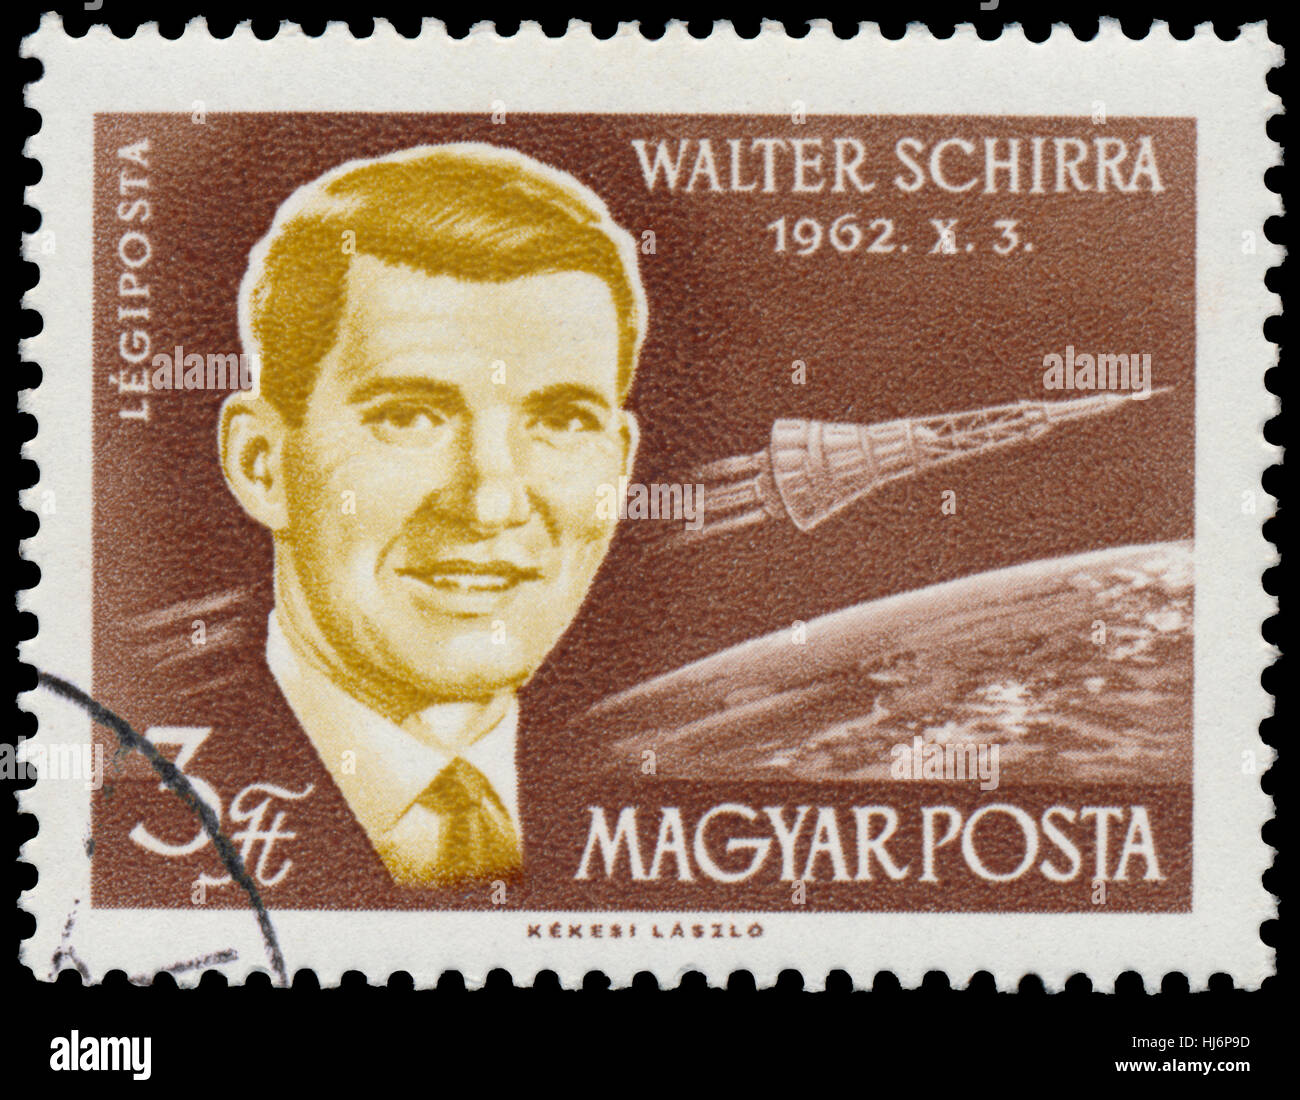 BUDAPEST, HONGRIE - 14 décembre 2016 : un timbre imprimé en Hongrie montre l'astronaute américain Walter Schirra circa 1962 série des astronautes ; Banque D'Images